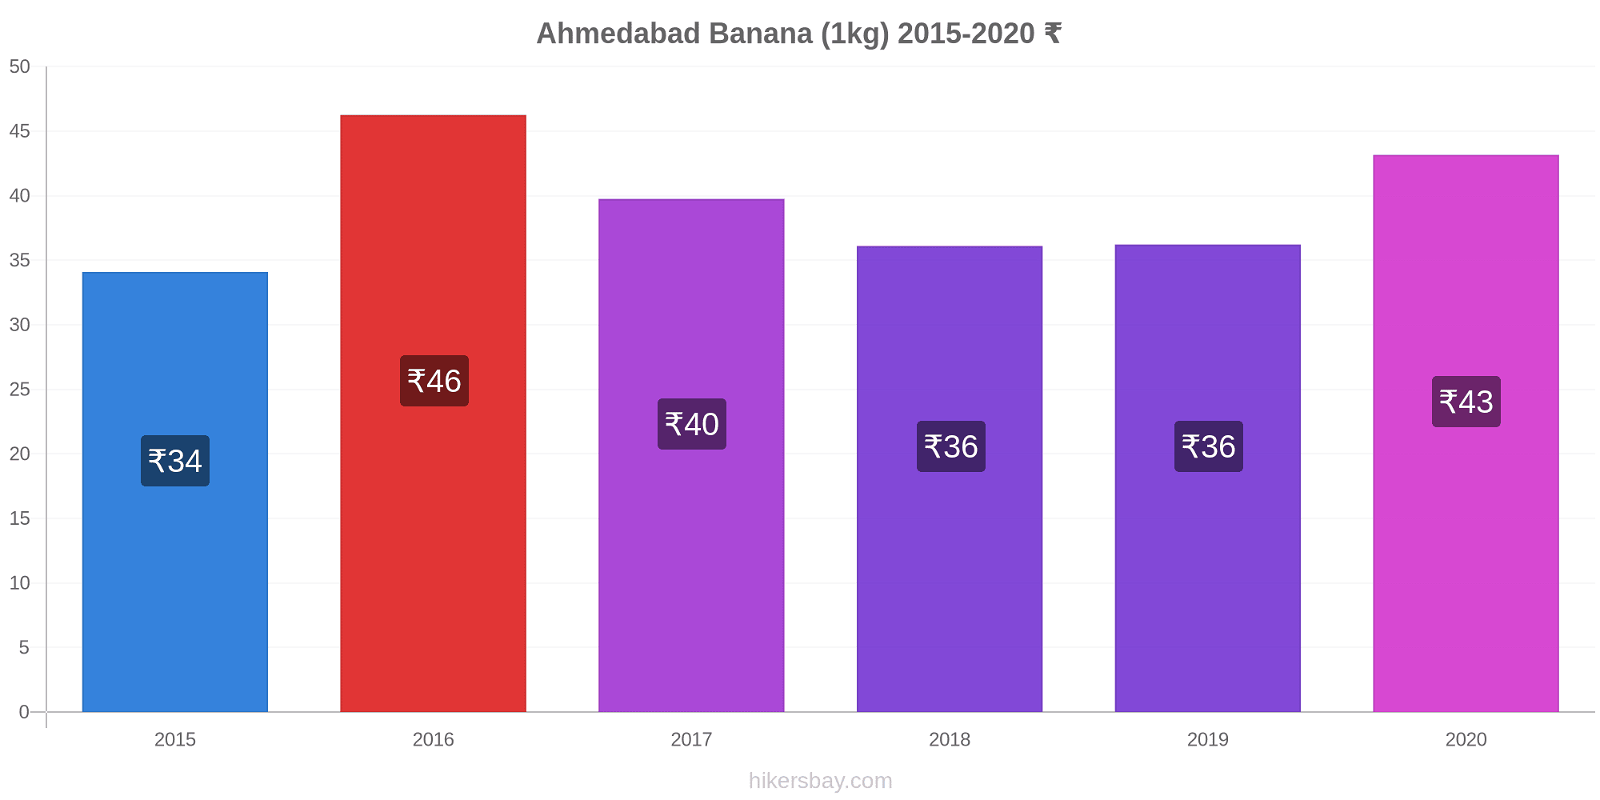 Ahmedabad modificări de preț Banana (1kg) hikersbay.com